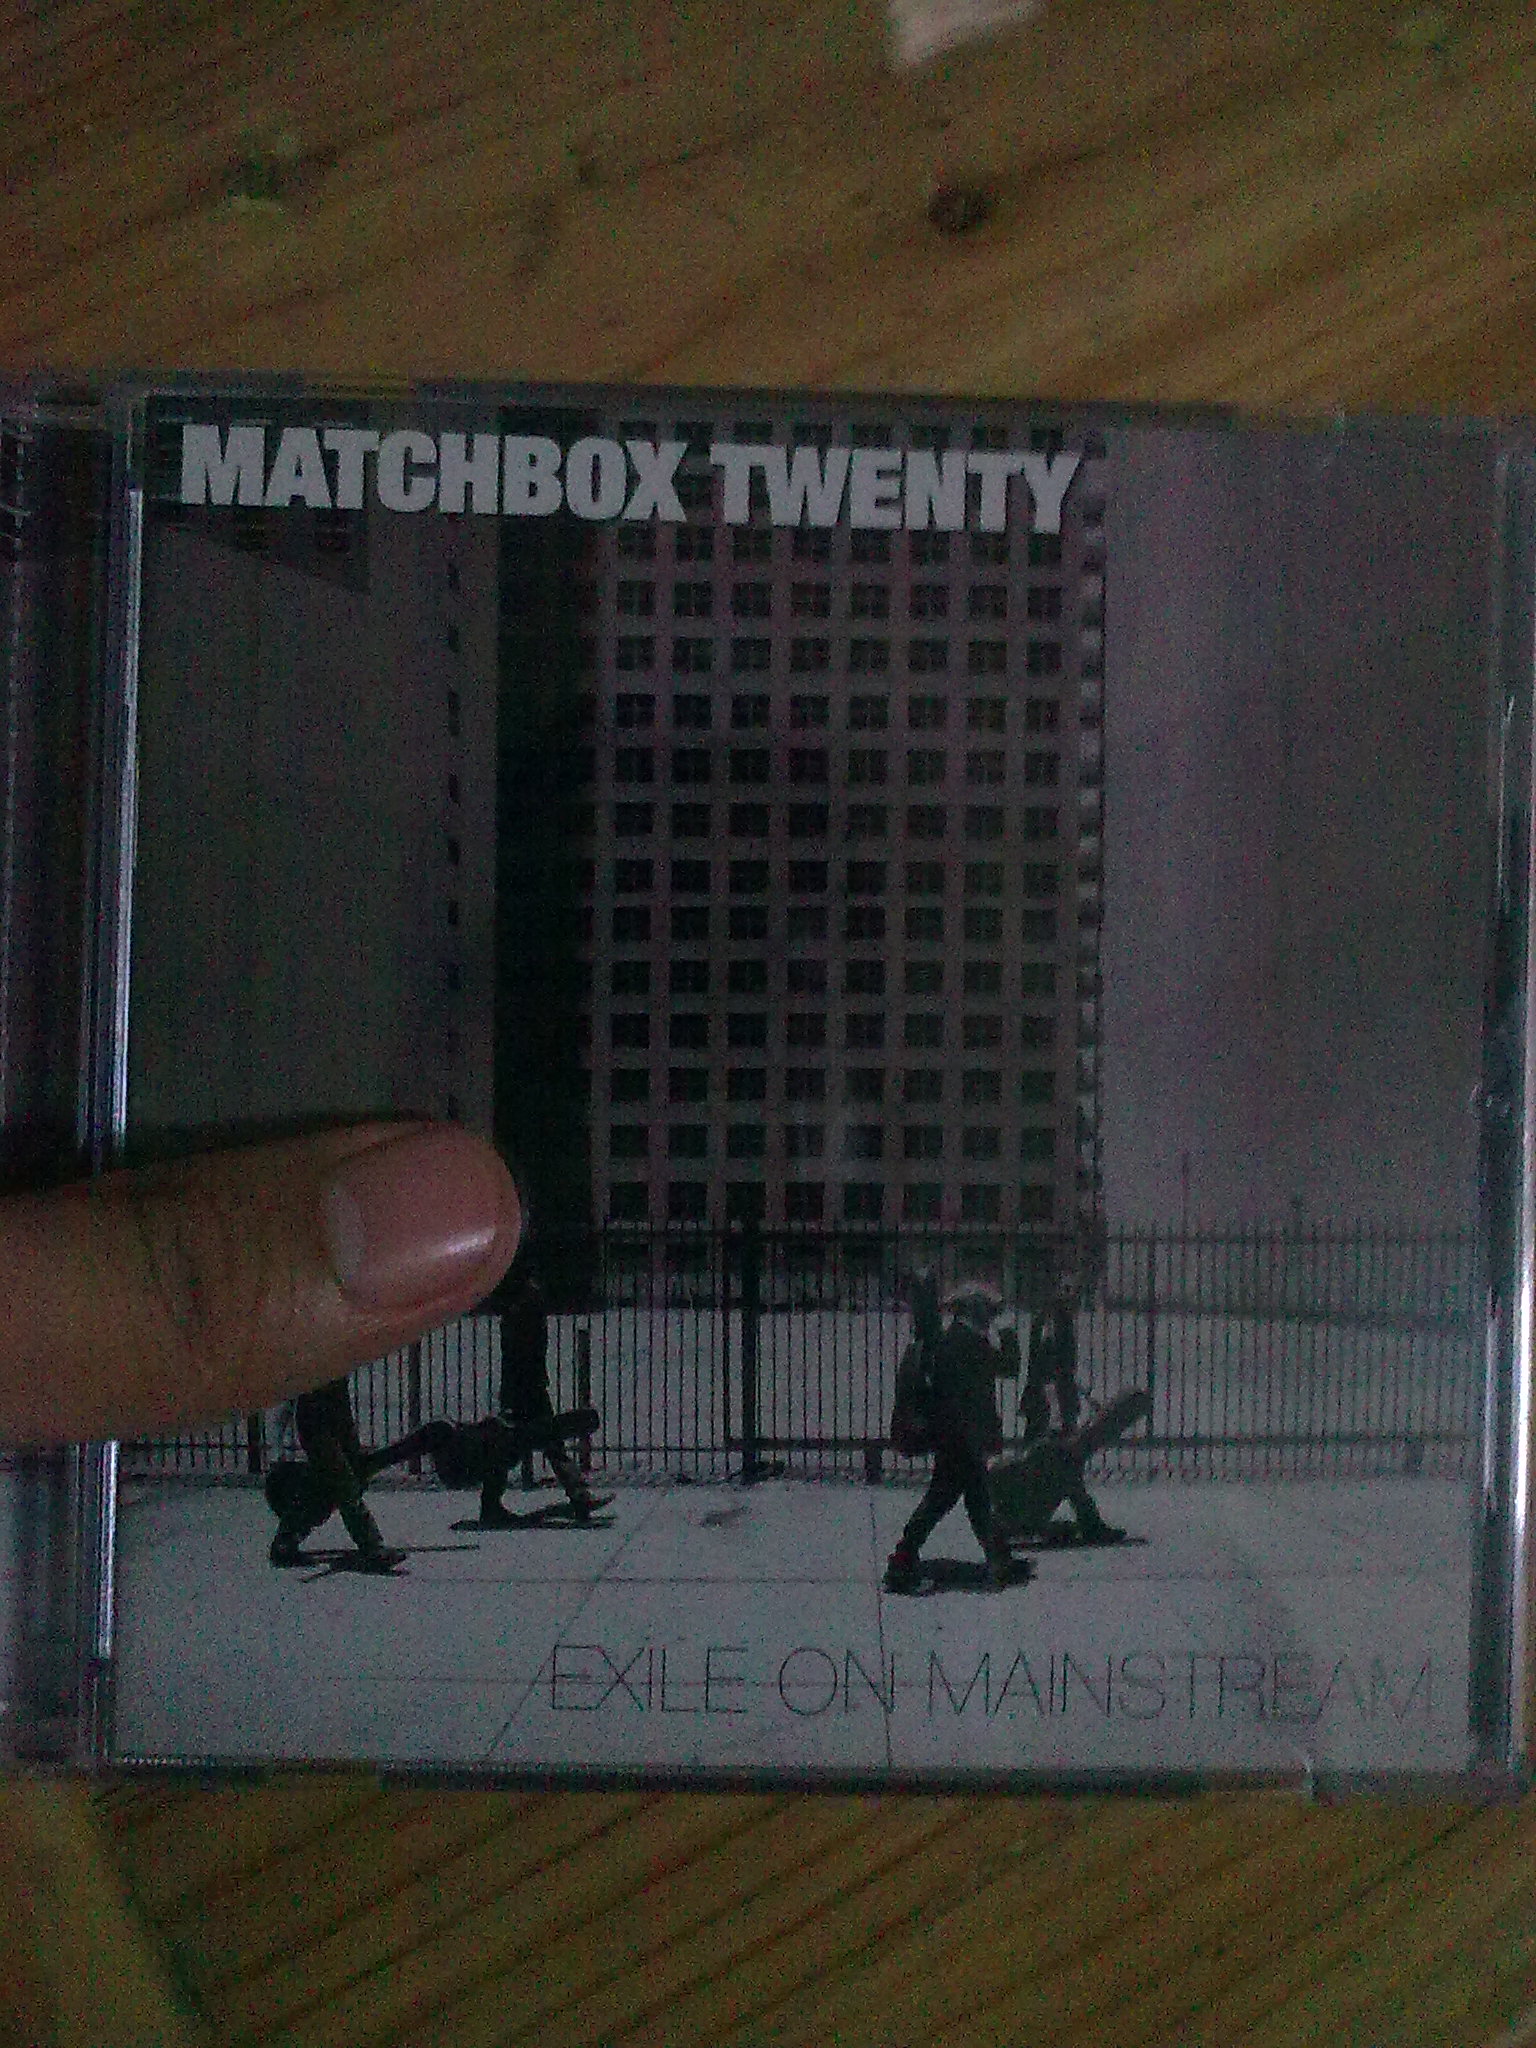 Matchbox+twenty+exile+on+mainstream+album+cover